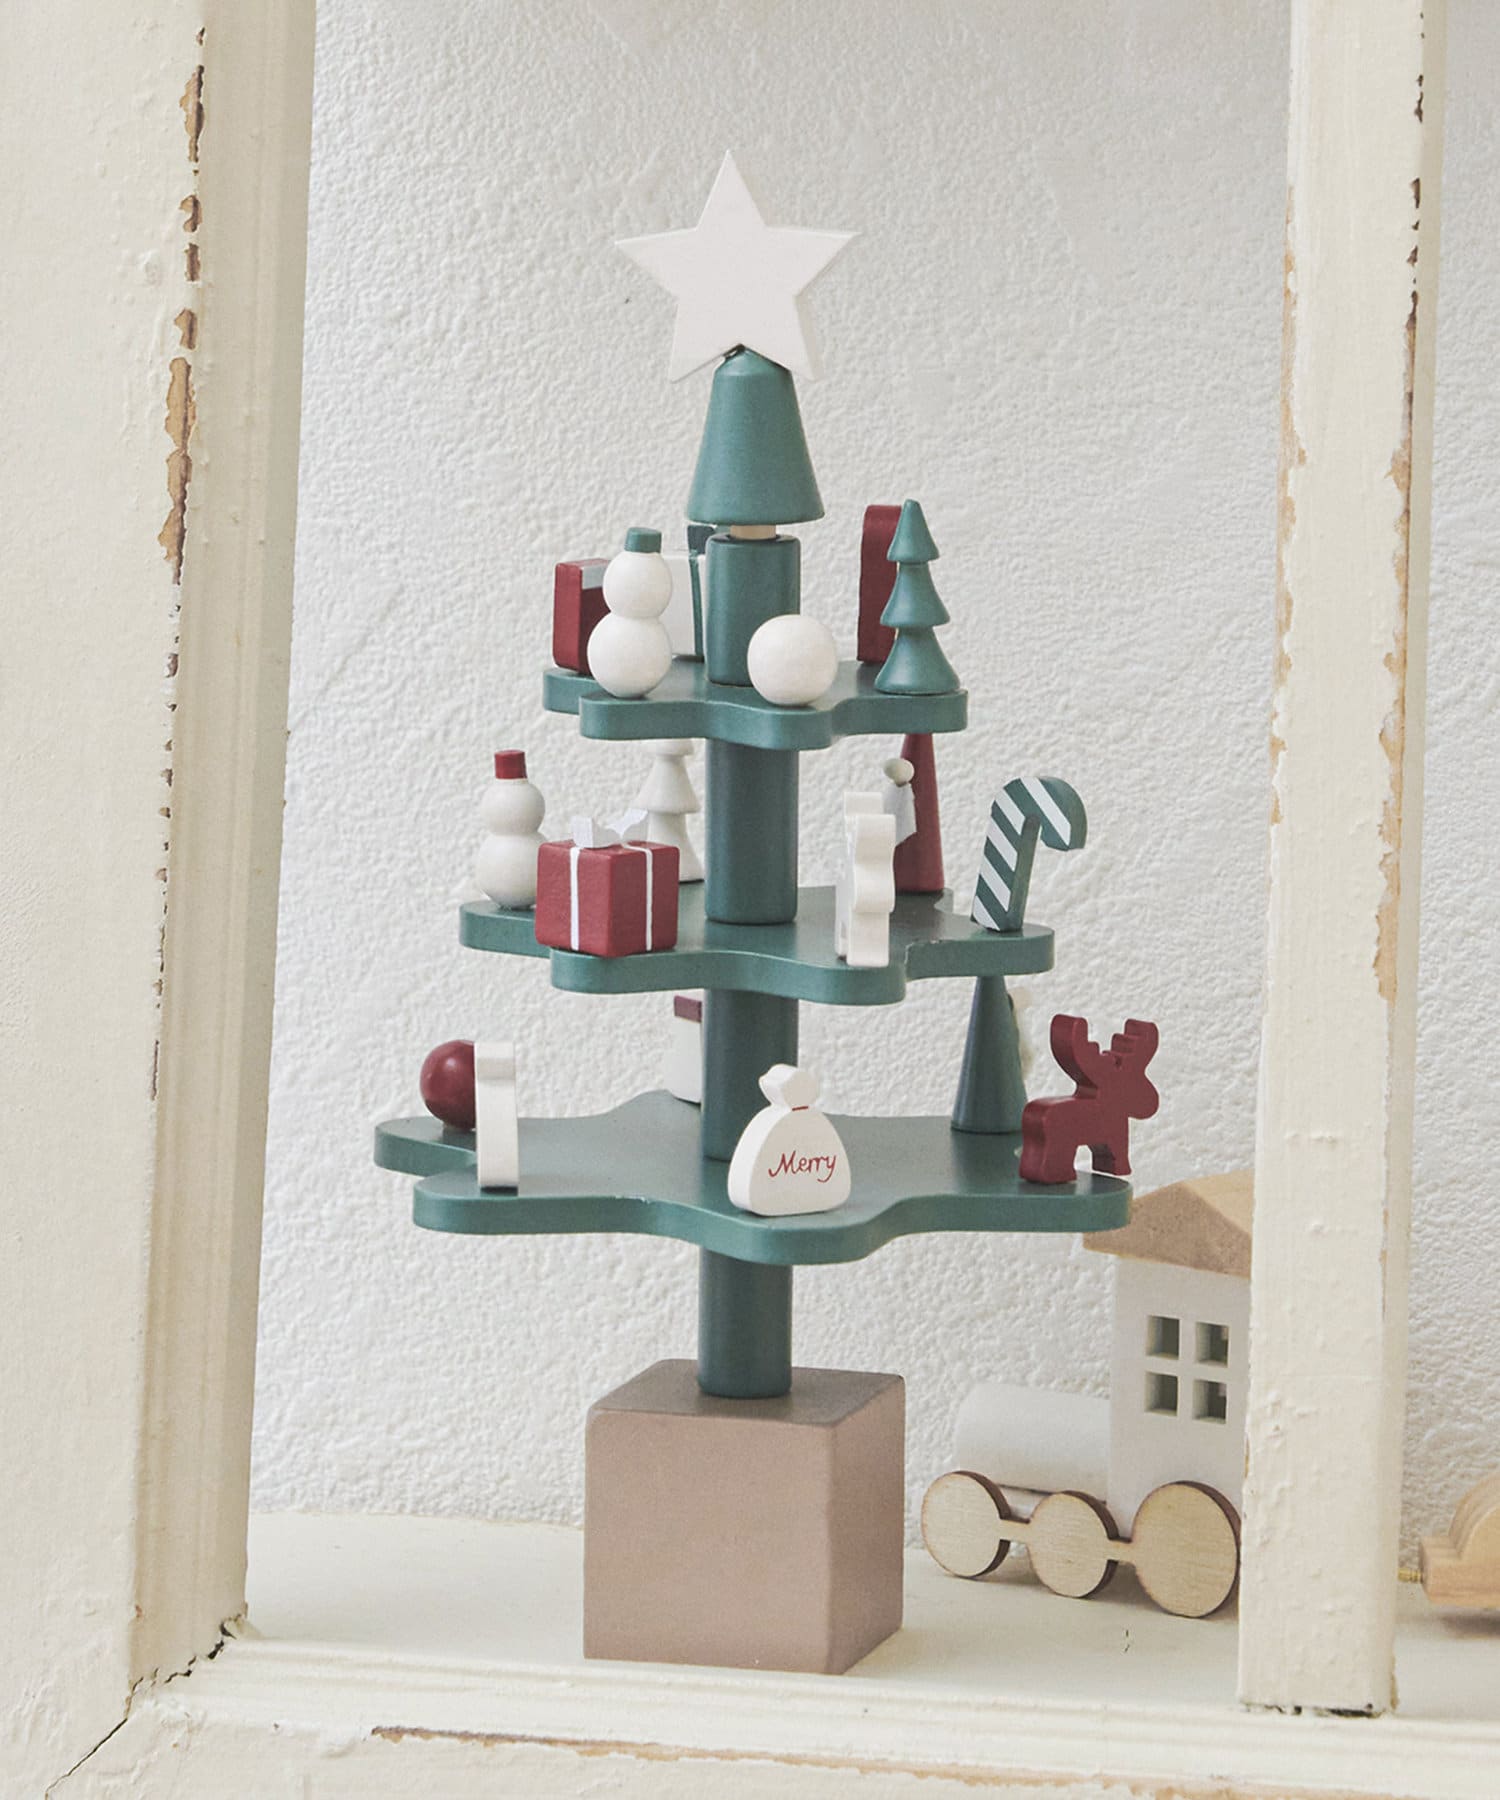 【現貨】3coins 聖誕樹 木頭 聖誕裝飾 聖誕節用品 日雜小物